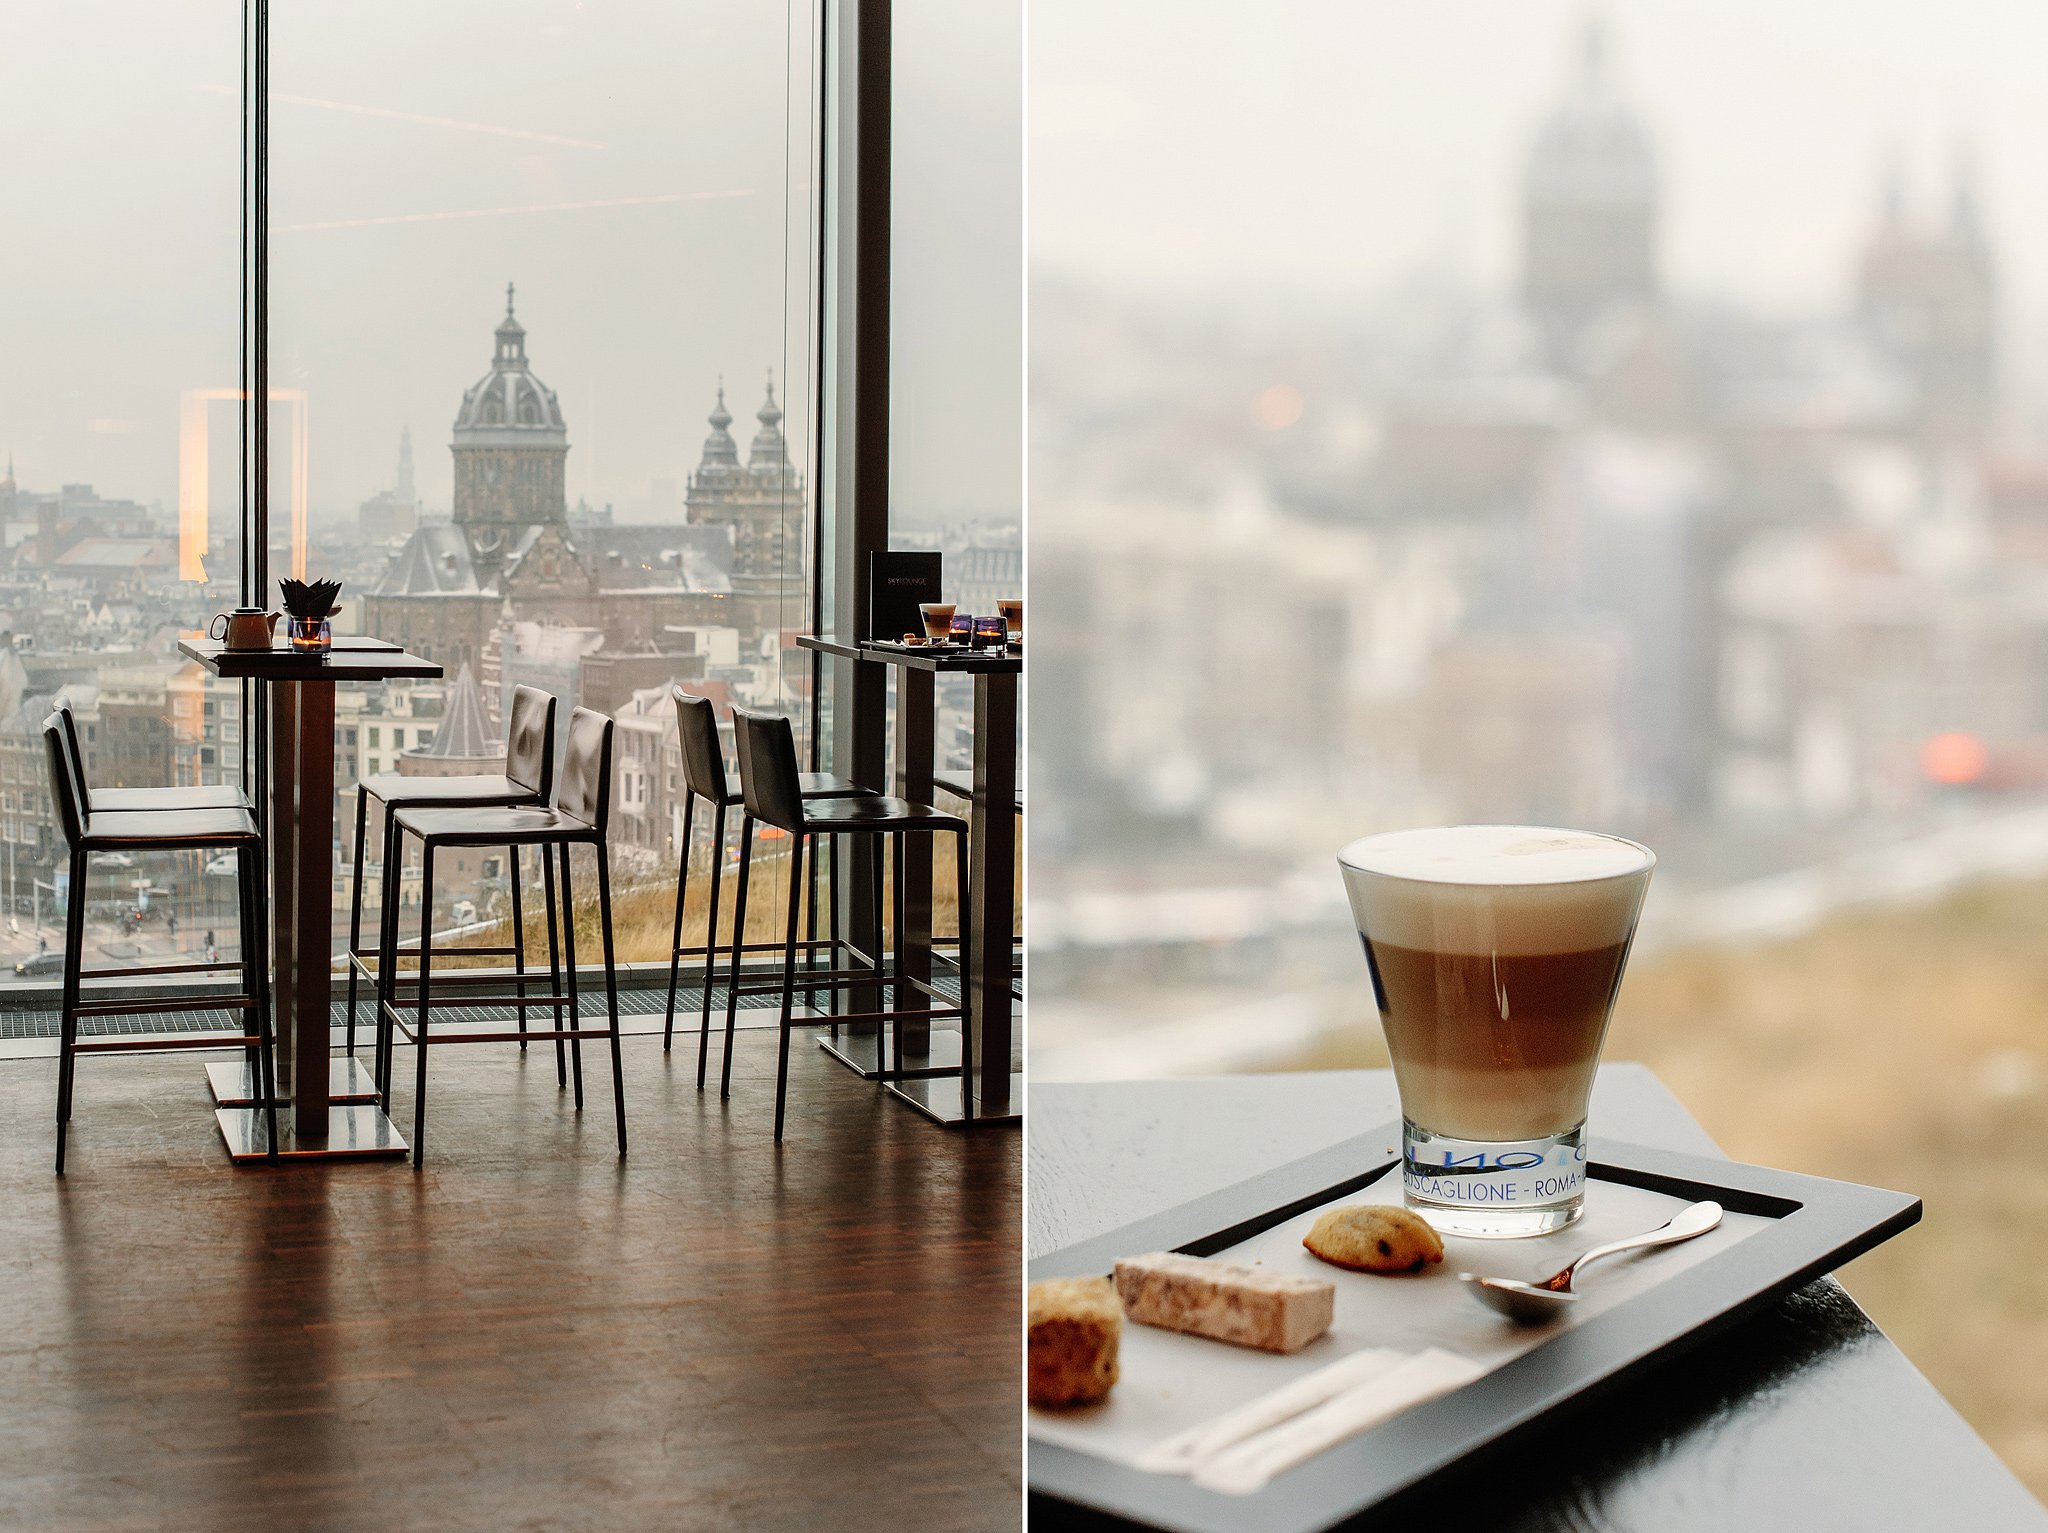 Кофе городок. Вид из окна кафе. Вид из окна кофейни. Кафе с панорамными окнами. Красивый вид из окна кафе.